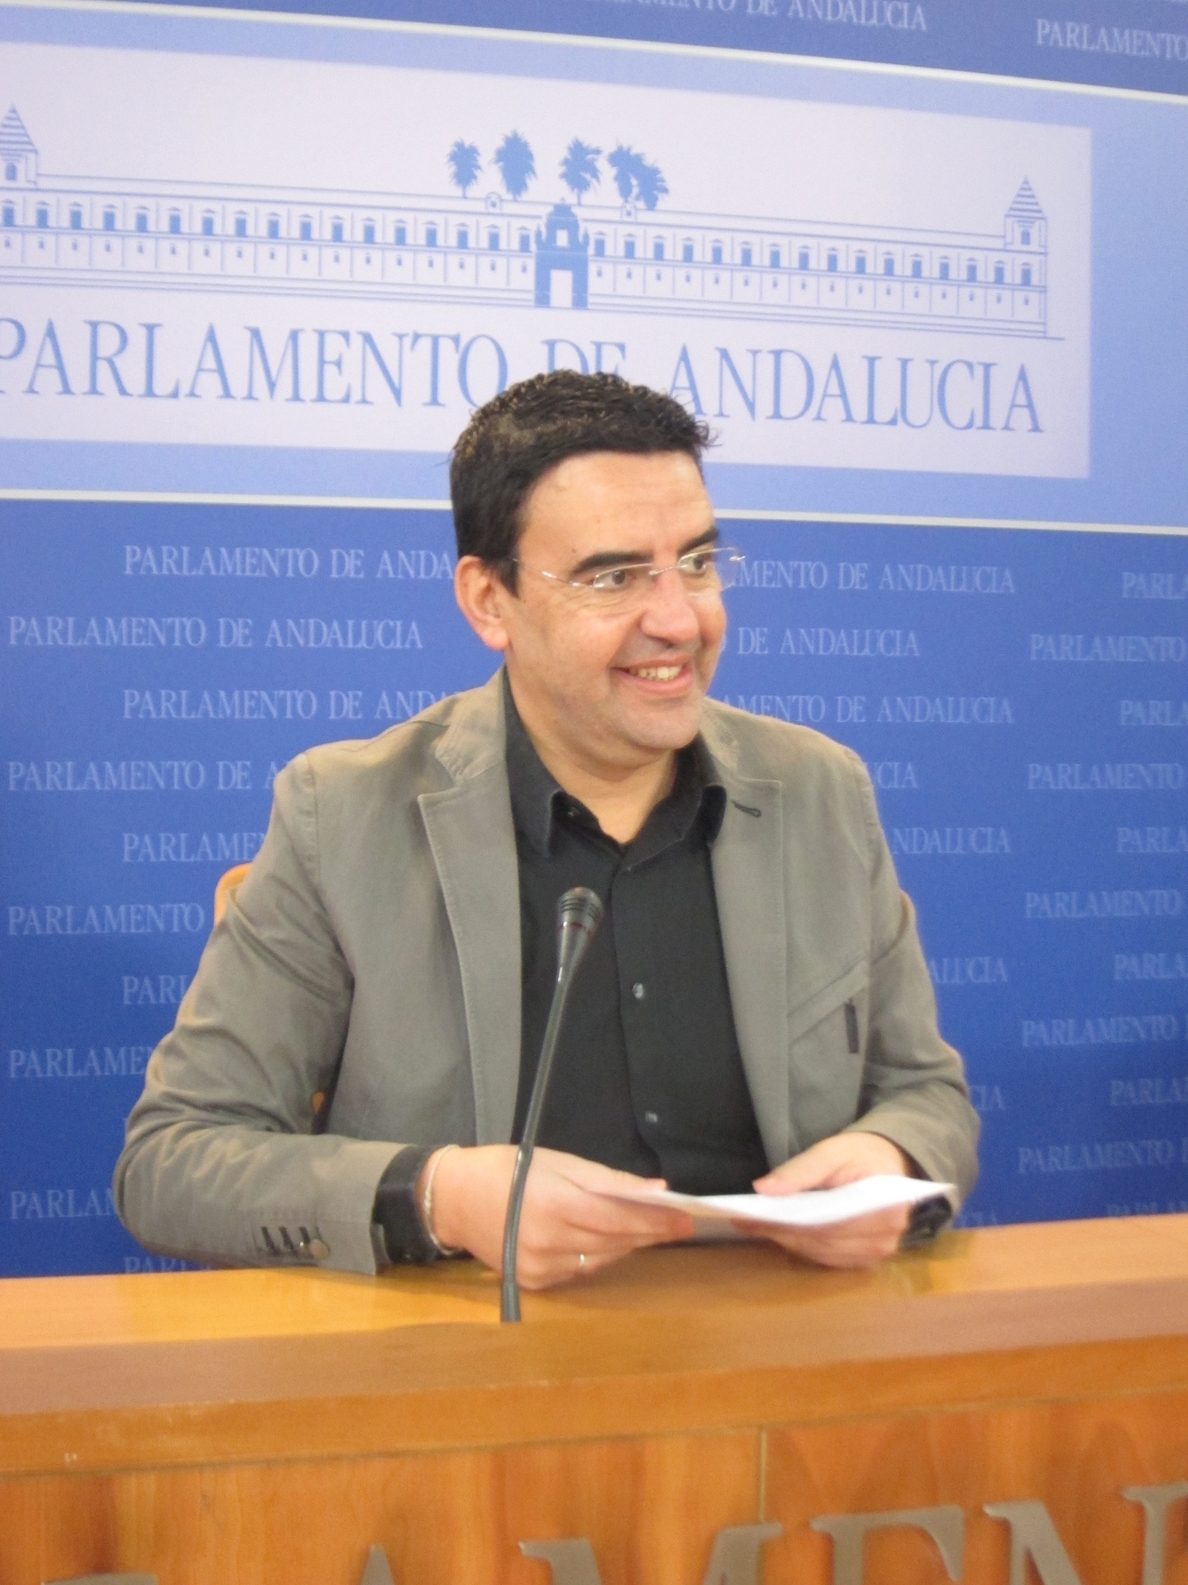 La Ejecutiva del PSOE propone a Mario Jiménez como cabeza de lista al Parlamento andaluz